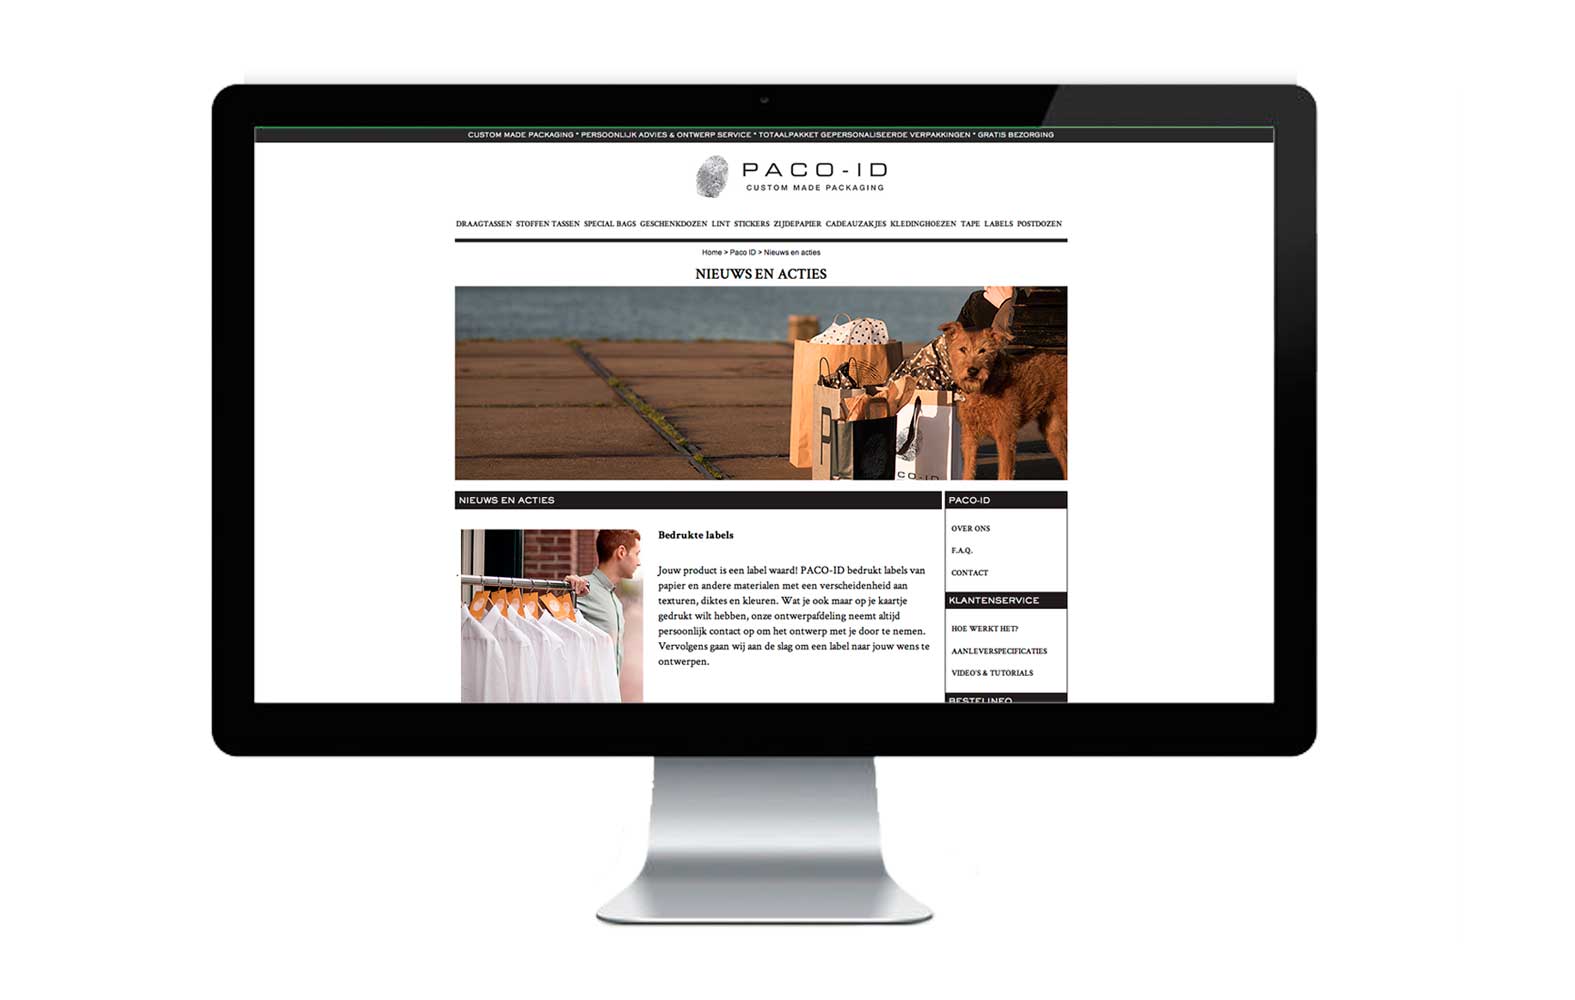 StudioErnst-PACO-ID-custom-made-packaging-website6